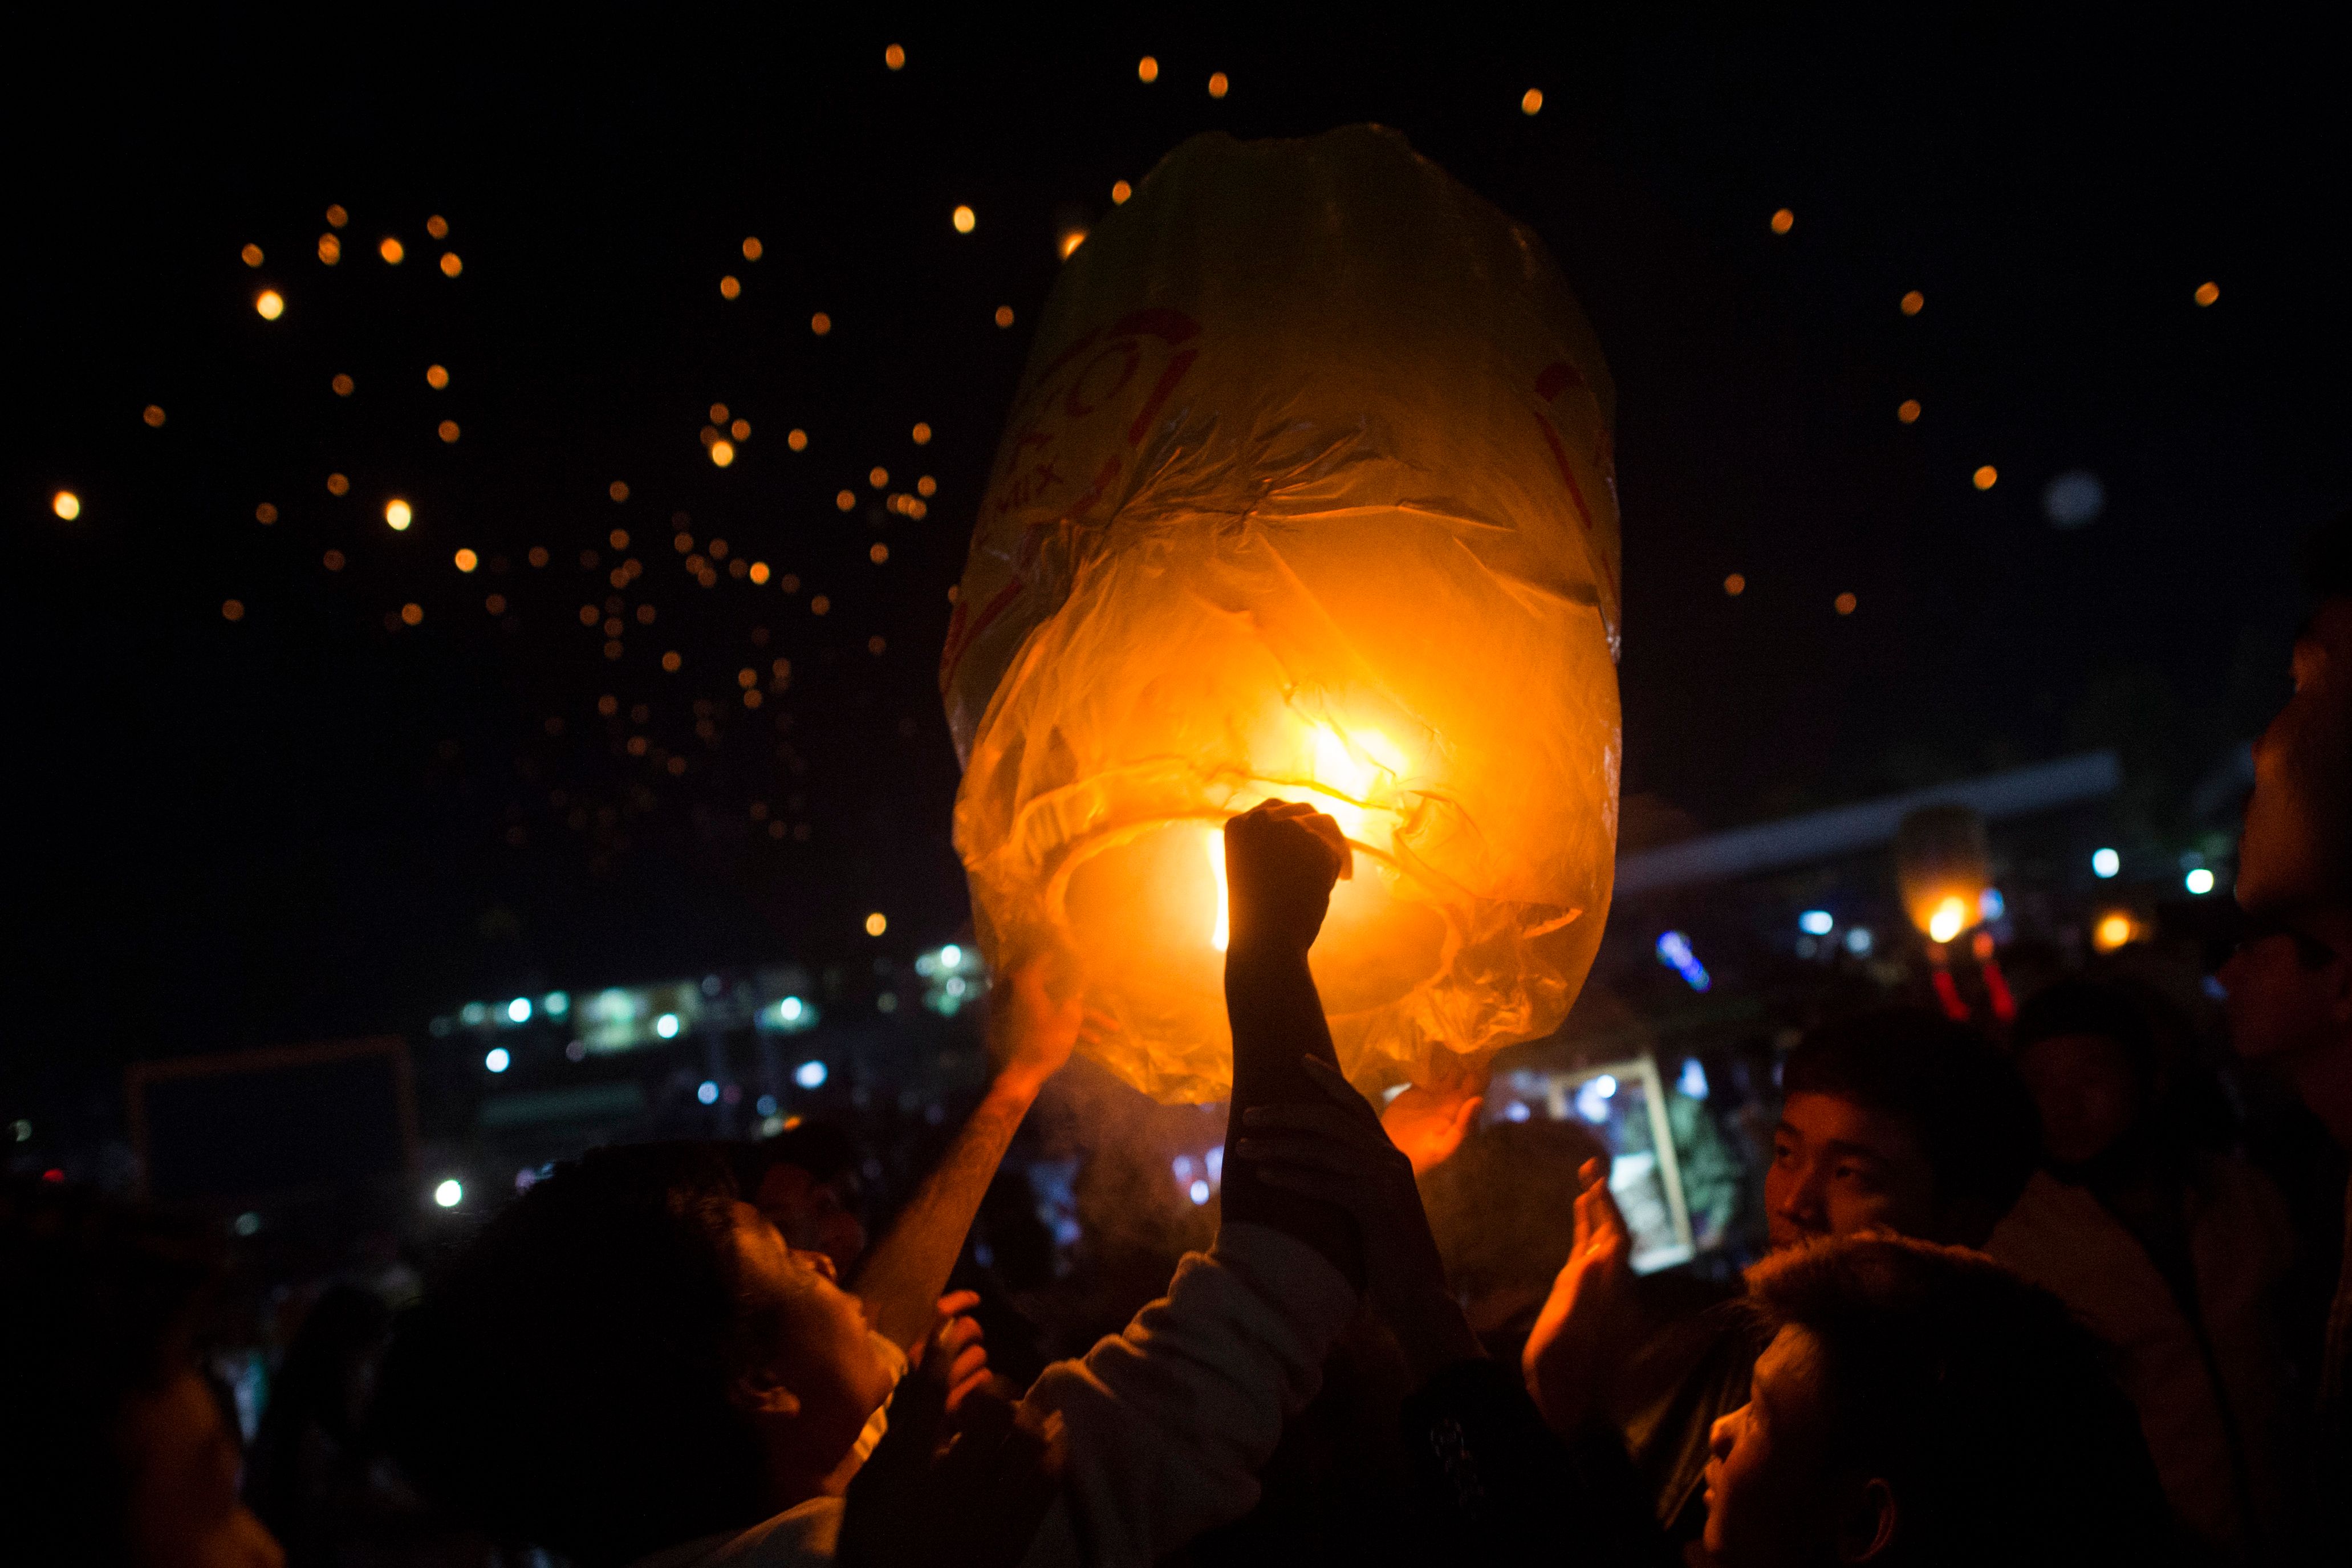 缅甸:缤纷夺目点灯节